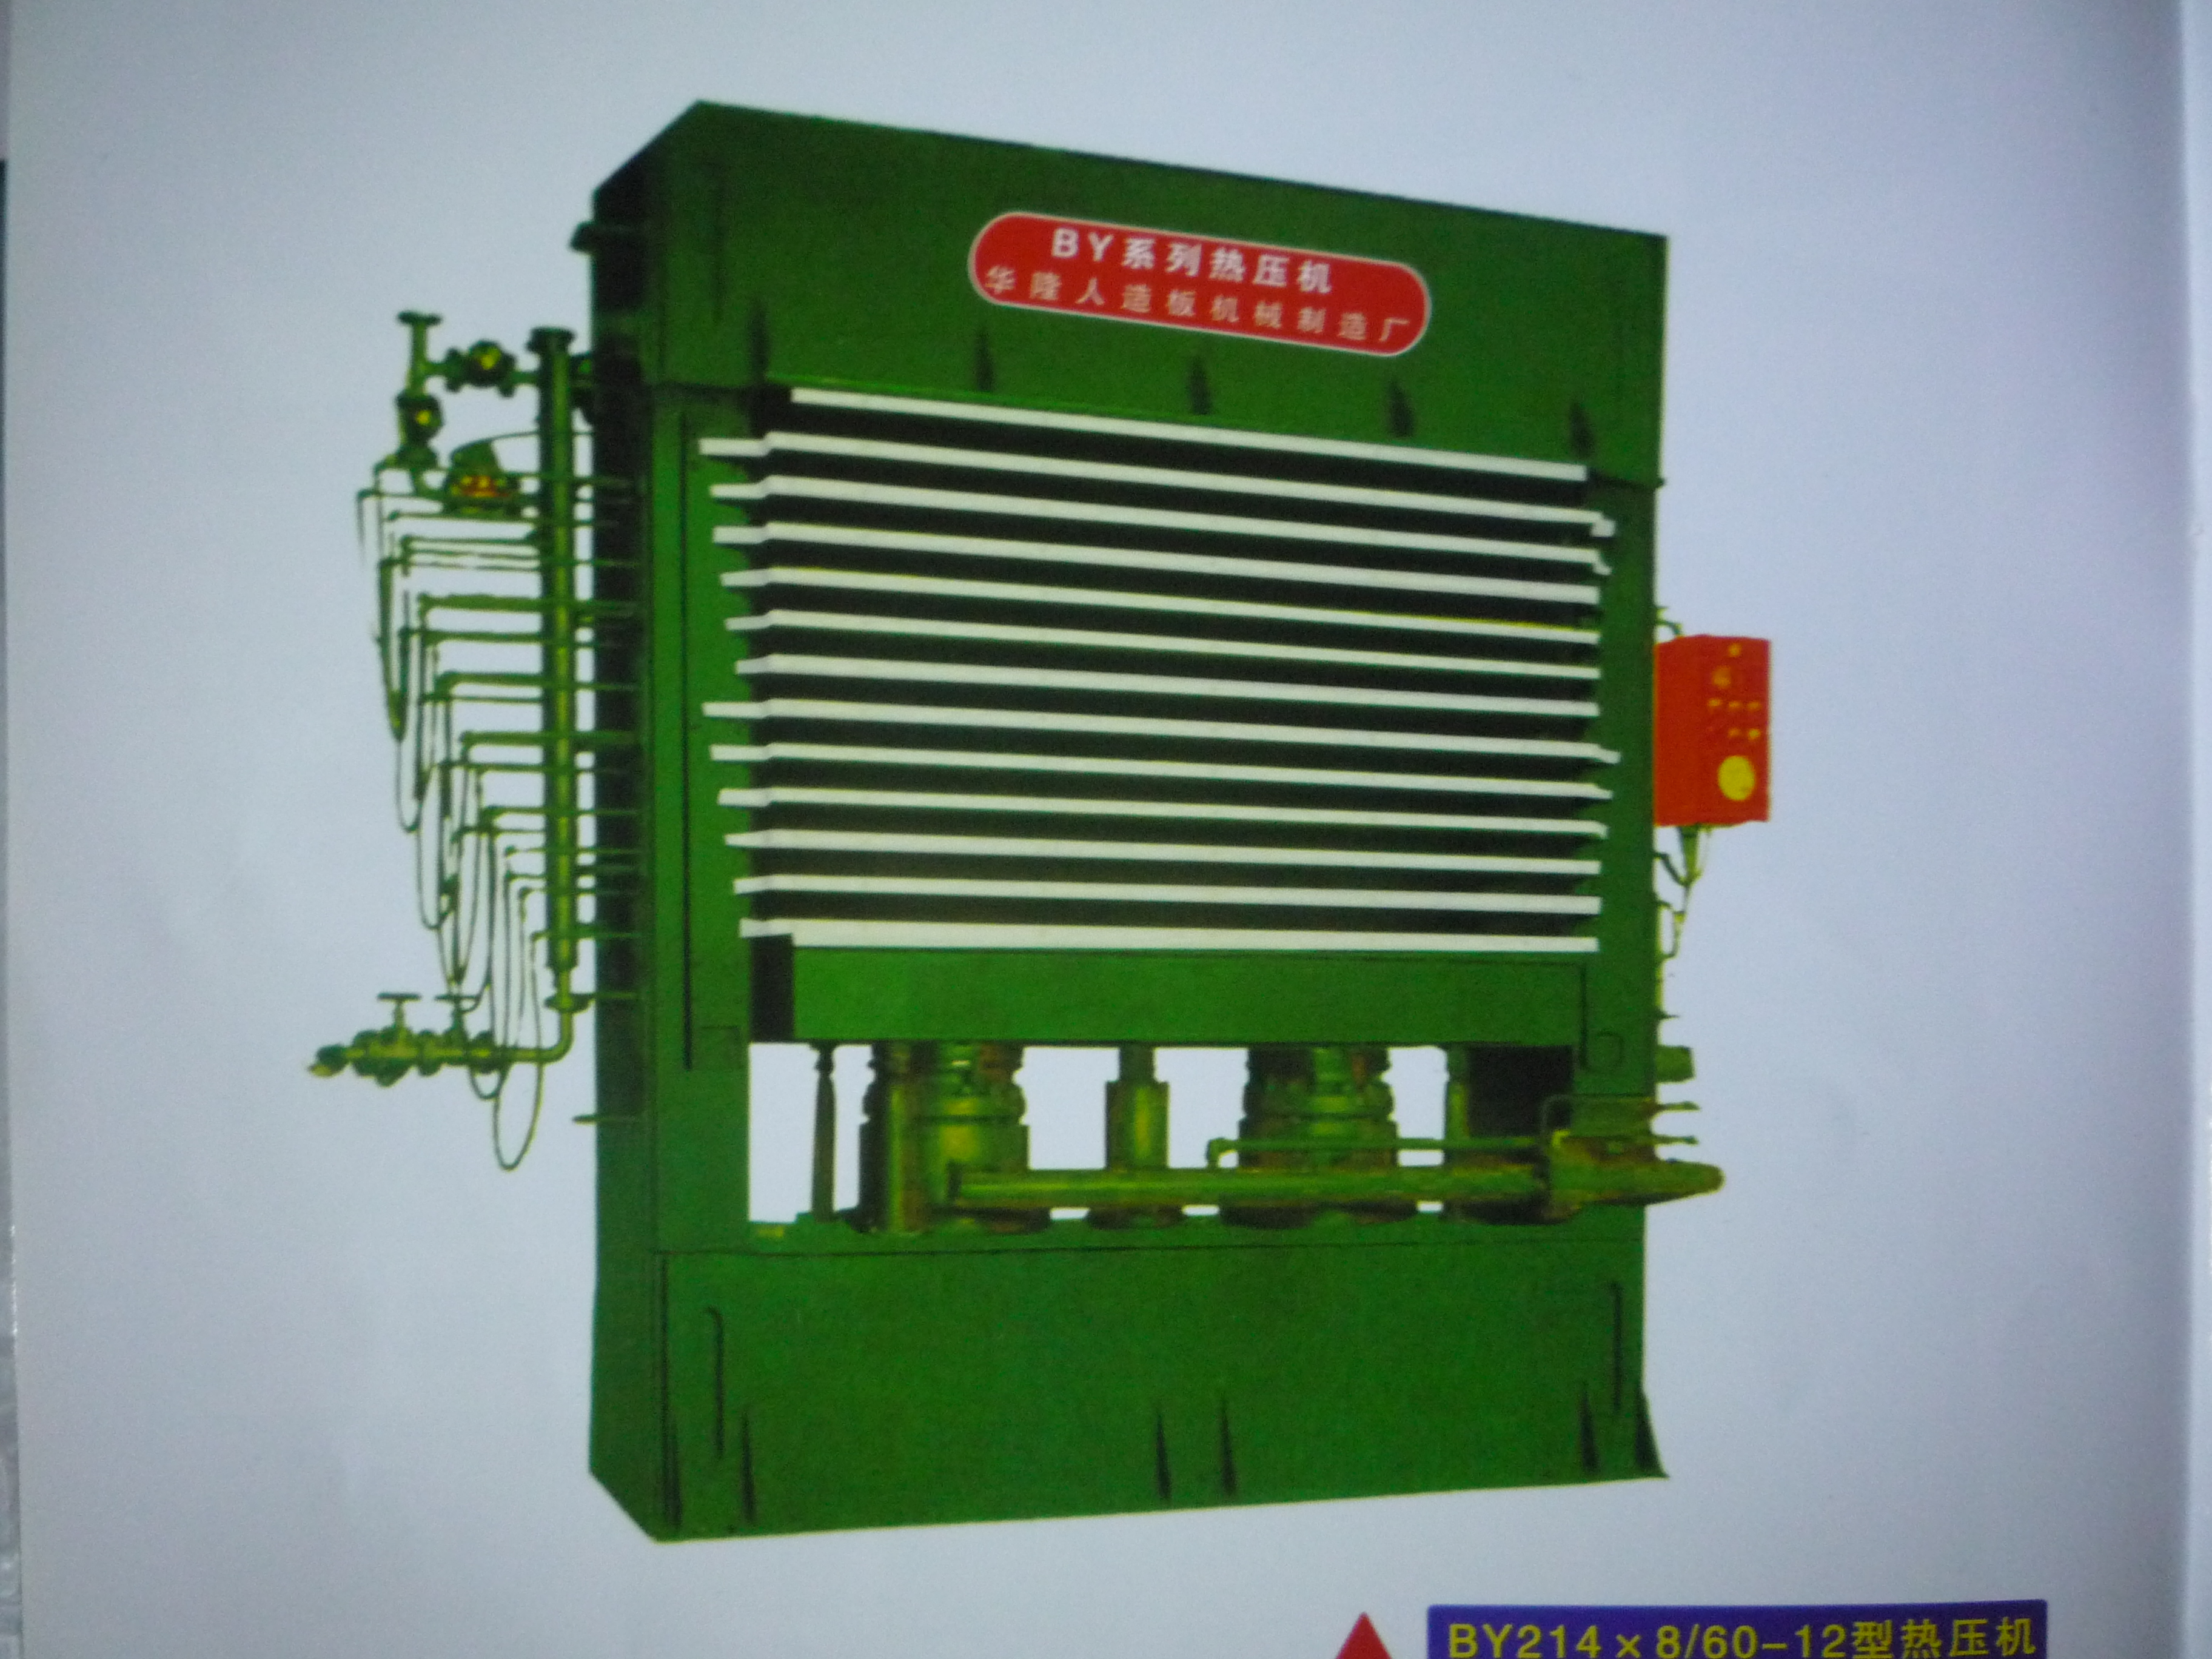 供应用于木工的河北生态板热压机专业厂家  河北生态板热压机报价 河北生态板热压机多少钱